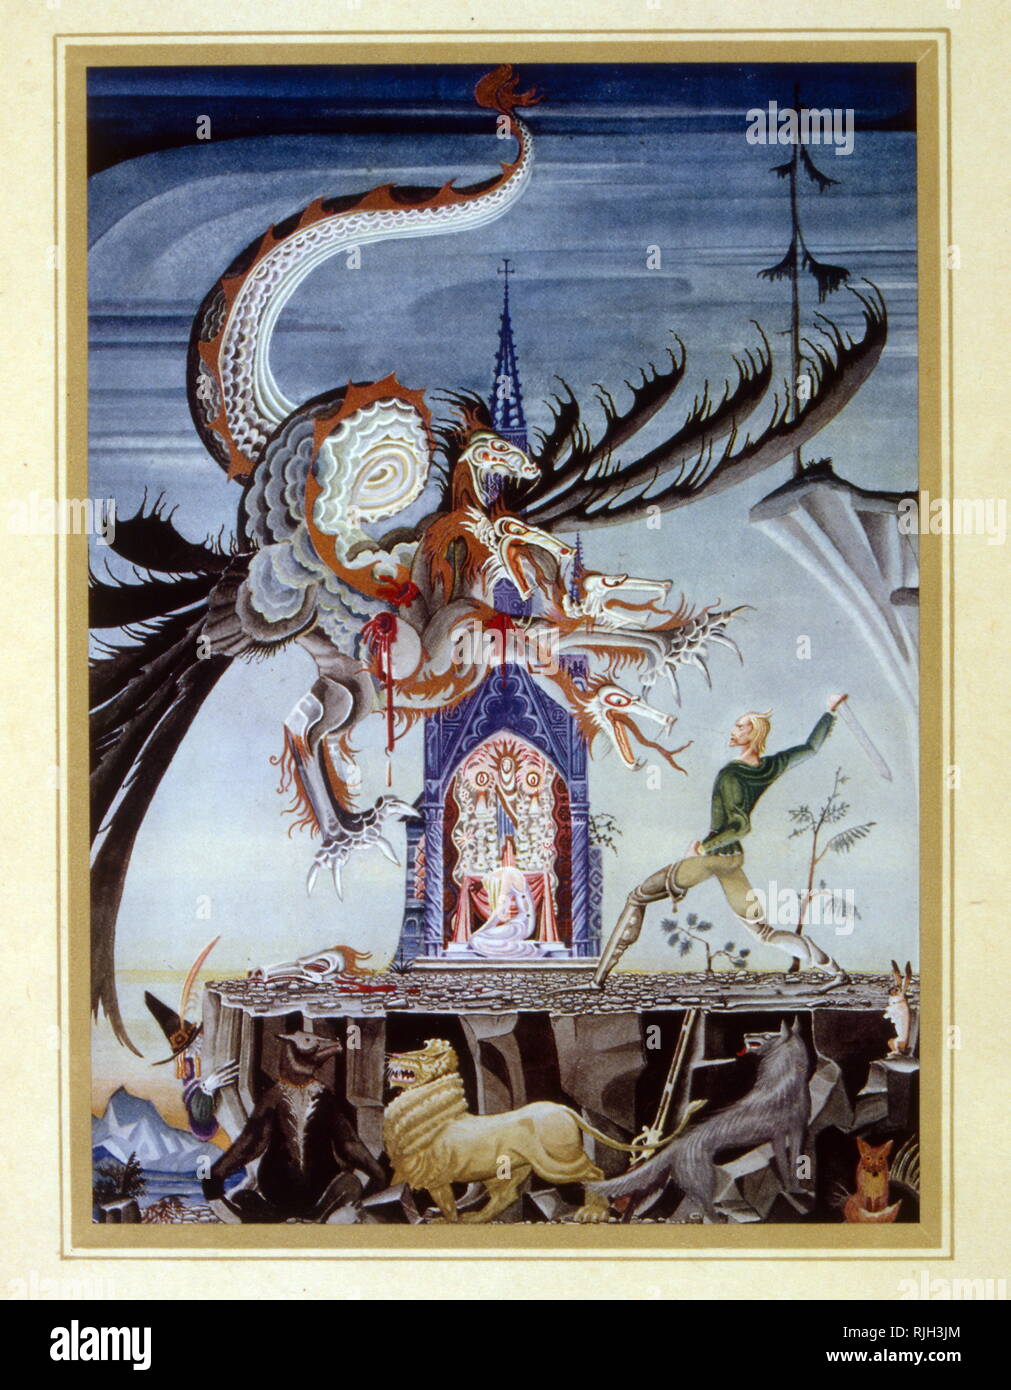 Il Drago Seven-Headed, fiaba di Jacob e Wilhelm Grimm. Illustrazione di Kay Nielsen, 1925 Foto Stock